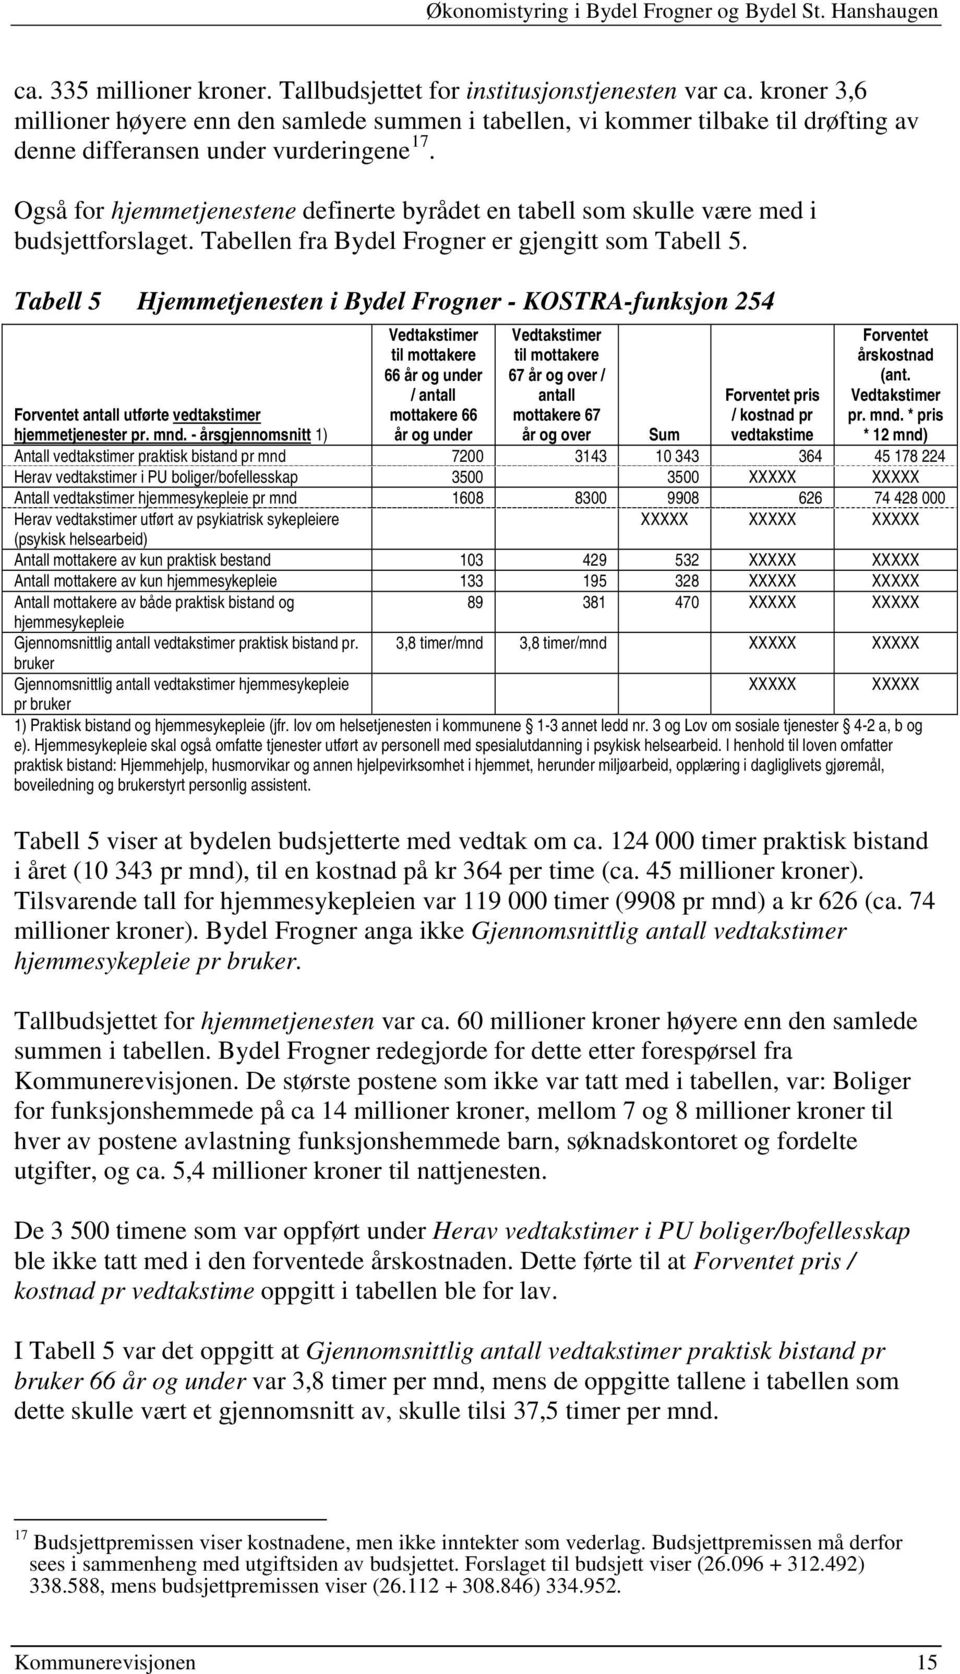 Også for hjemmetjenestene definerte byrådet en tabell som skulle være med i budsjettforslaget. Tabellen fra Bydel Frogner er gjengitt som Tabell 5.